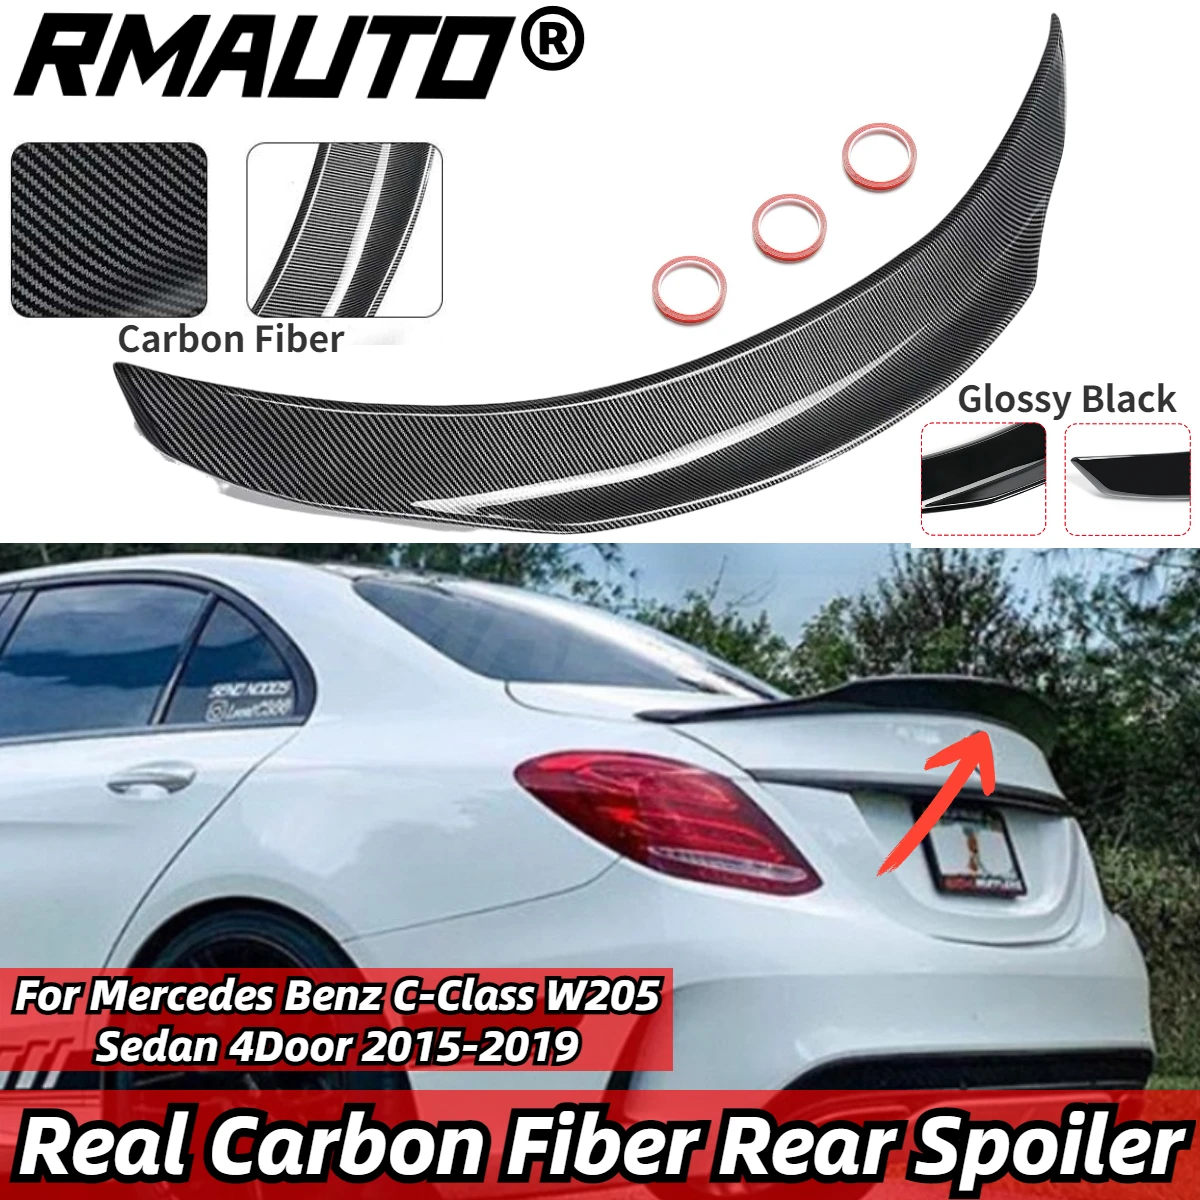 

RMAUTO, реальное углеродное волокно, стиль PSM, автомобильный фотоблок, комплект для Mercedes Benz C-Class W205 седан, 4 двери, 2015-2019